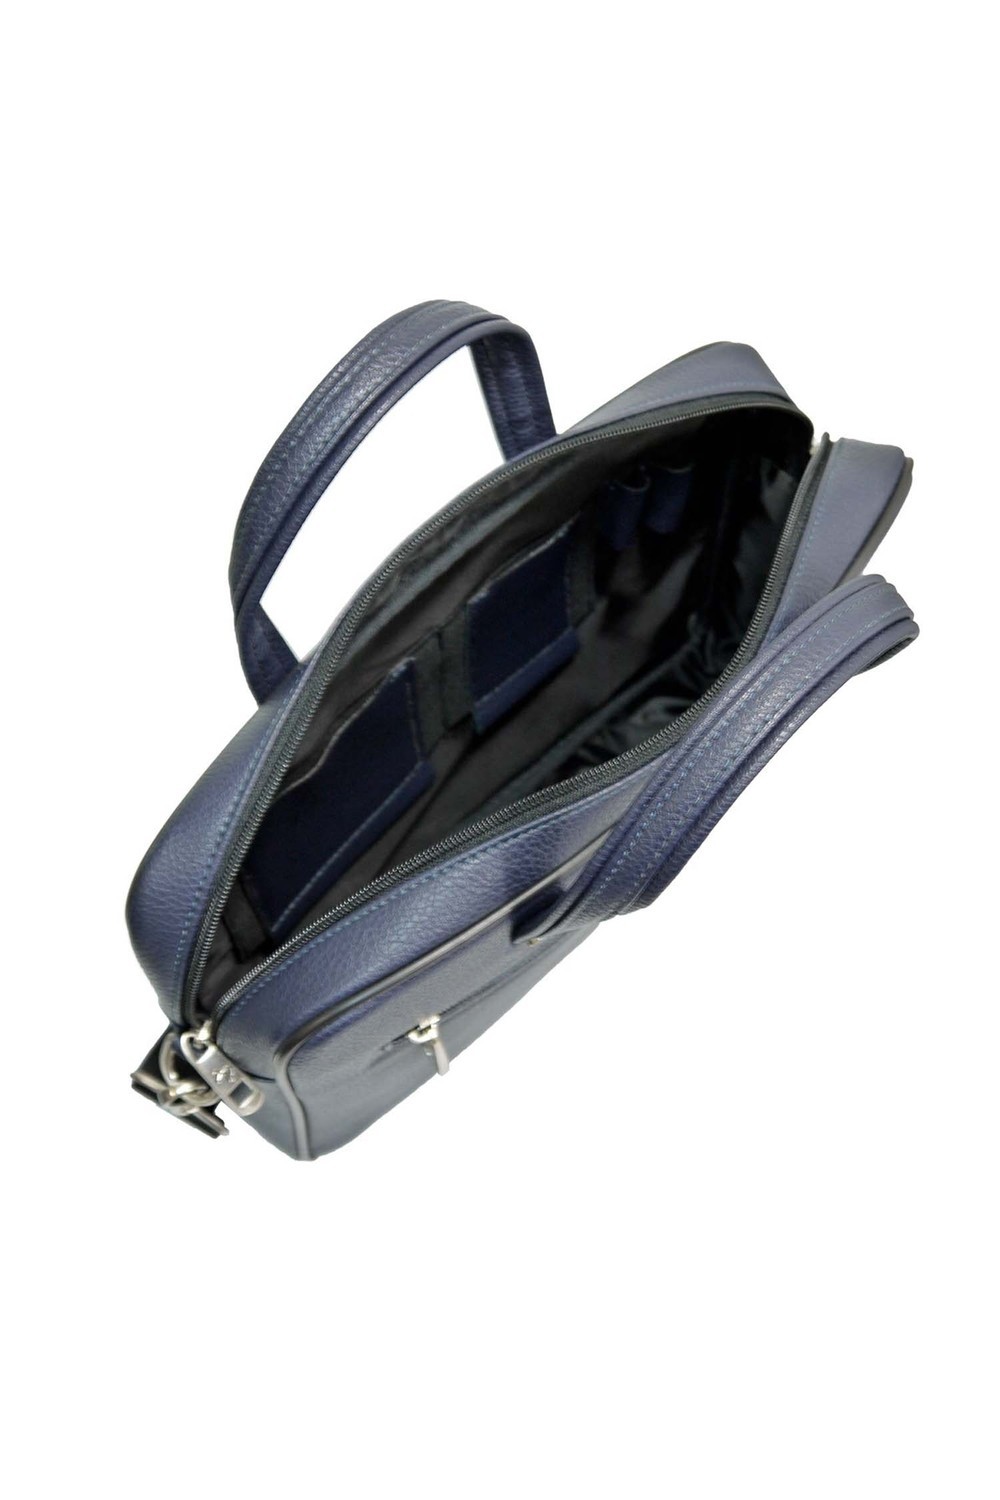 Портфель Pellecon, размер один размер, цвет синий - фото 4